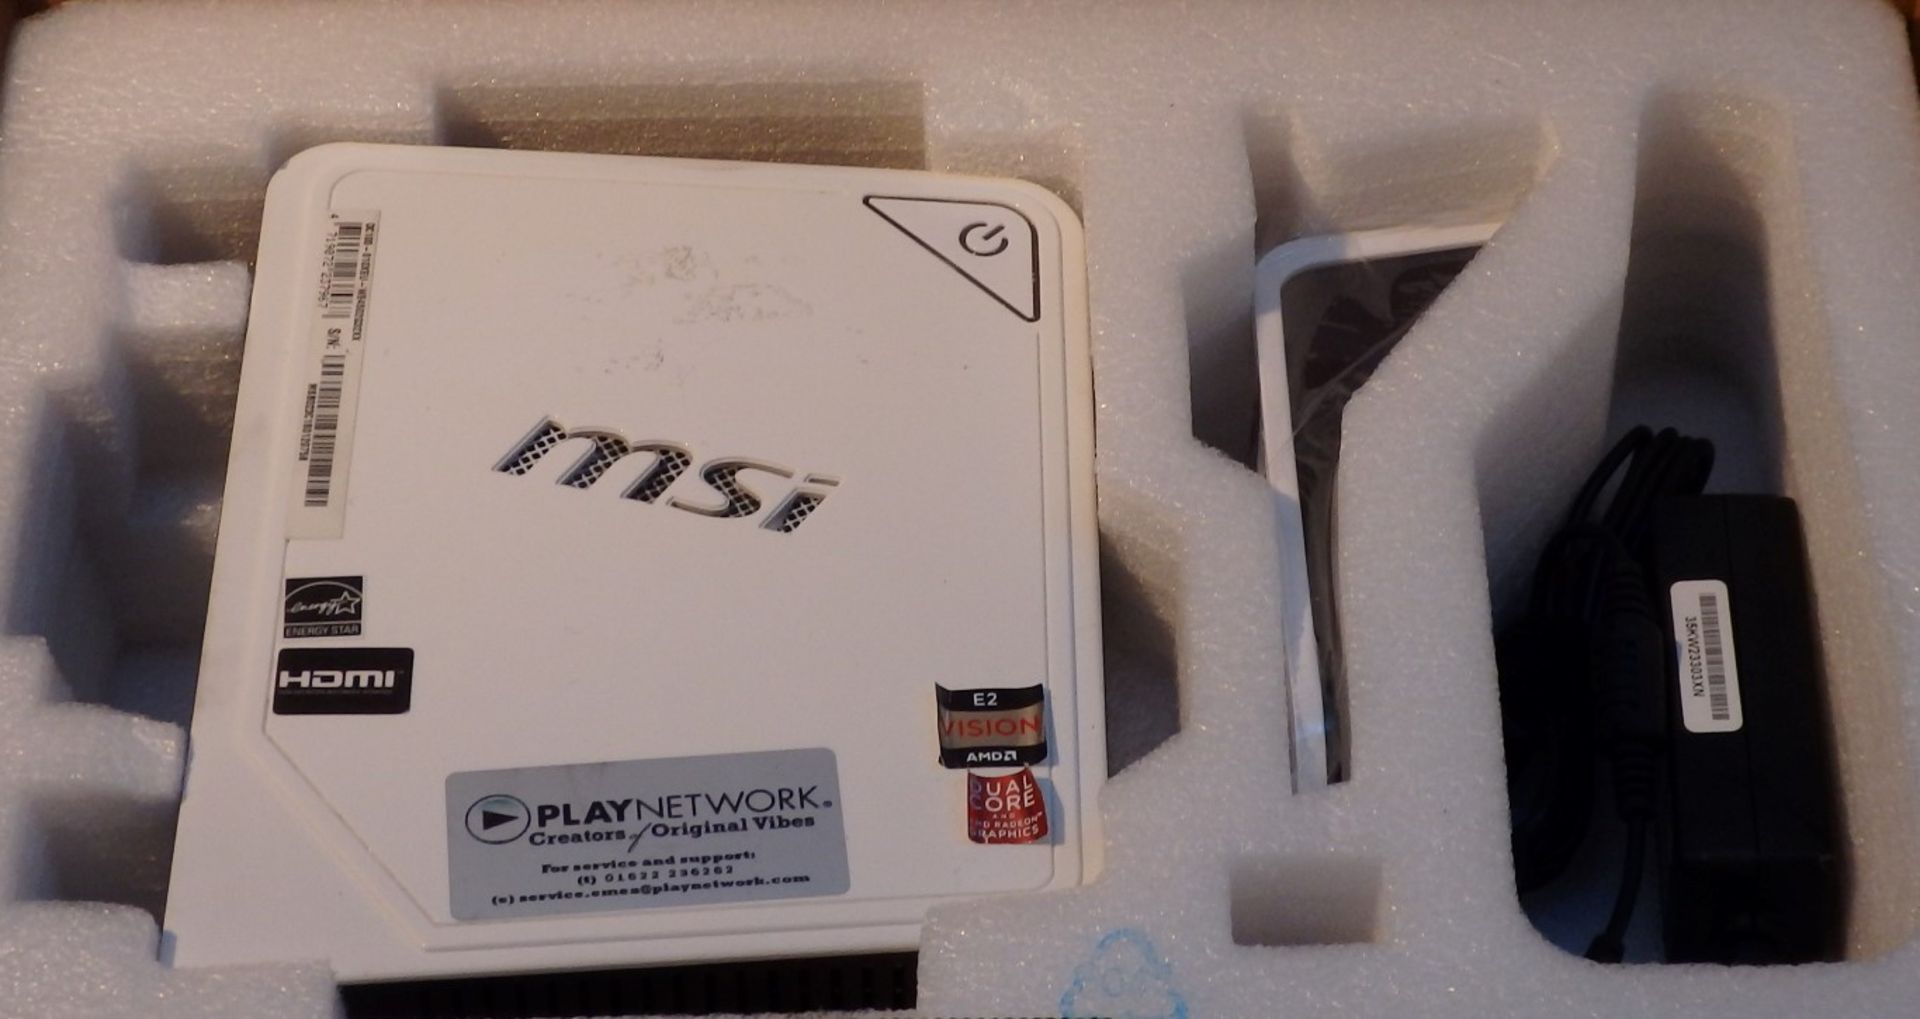 1 x MSI Wind Box DC100 Mini PC Computer – Model : MS-B023 - AMD Brazos Dual Core E-450 (1.65GHz) - - Image 4 of 10